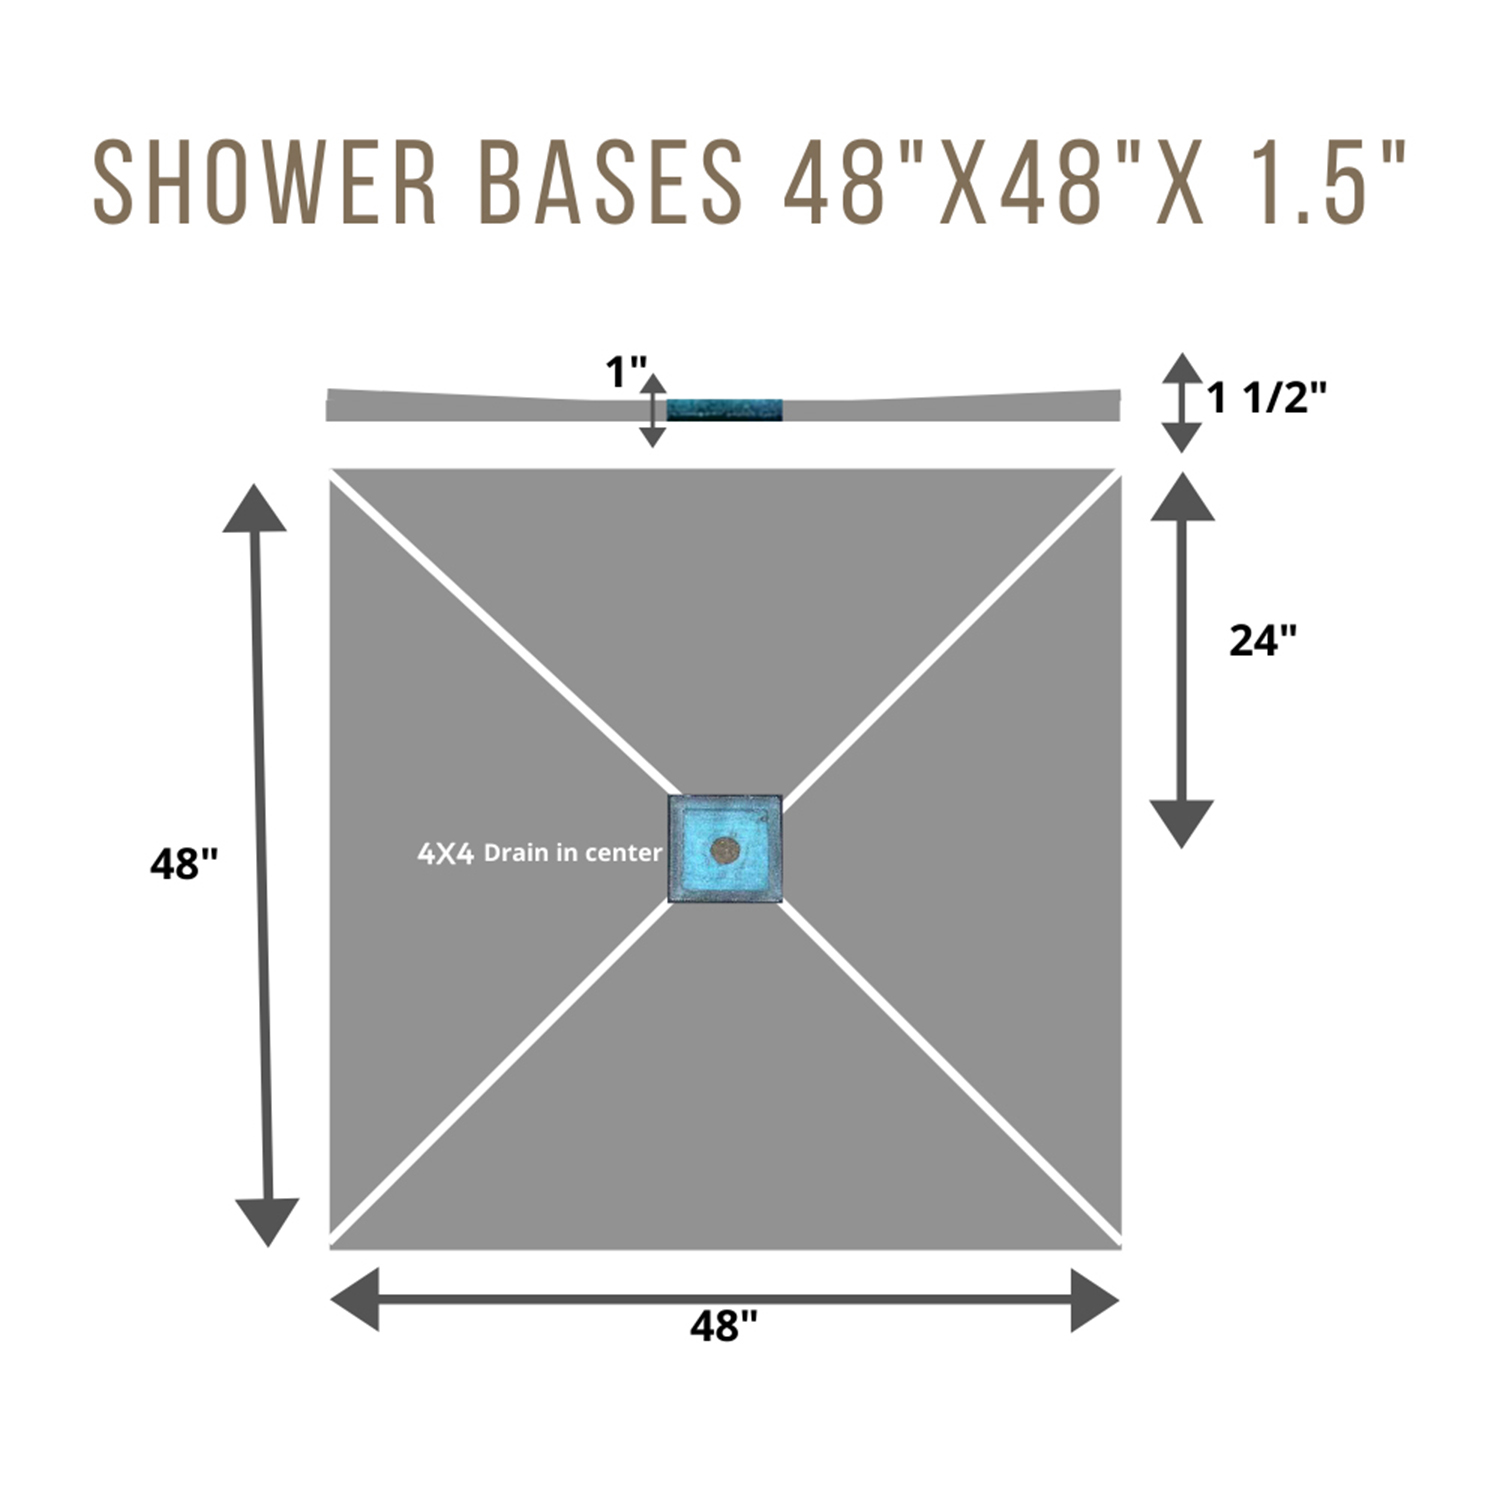 Shower Base 4x4 CENTRE 4 x 4